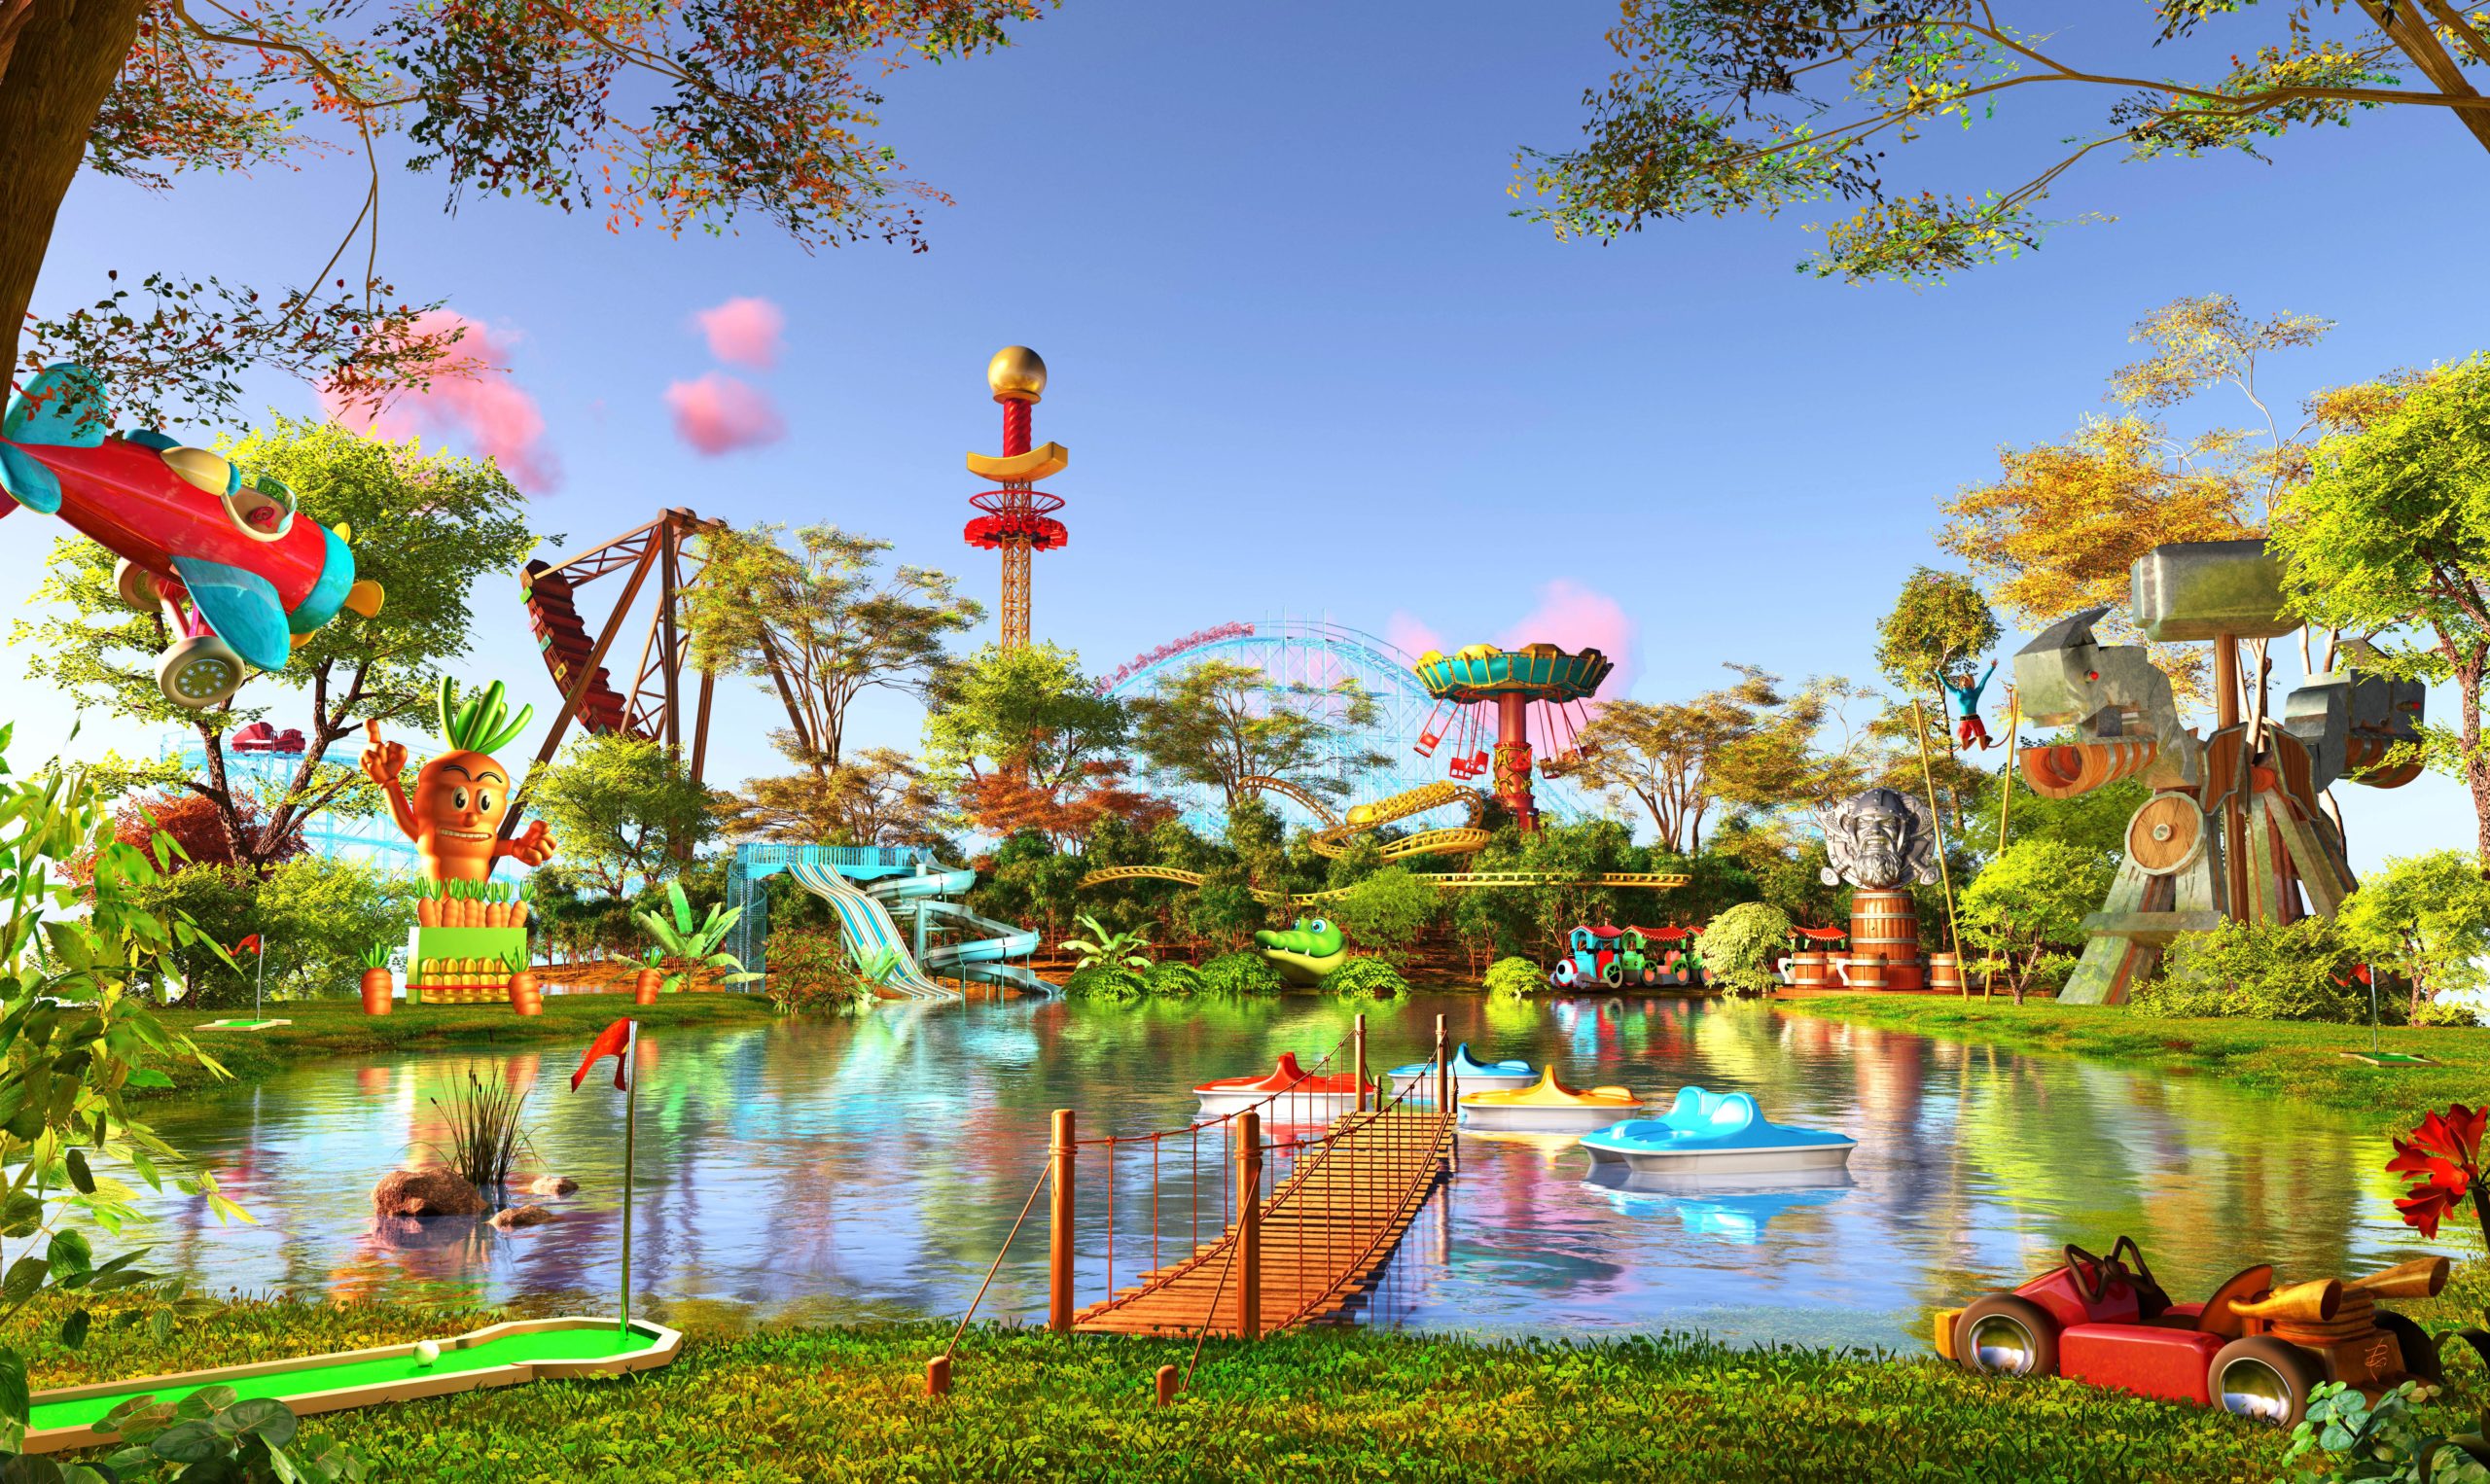 Le Parc - Le Fleury - Parc d'attraction